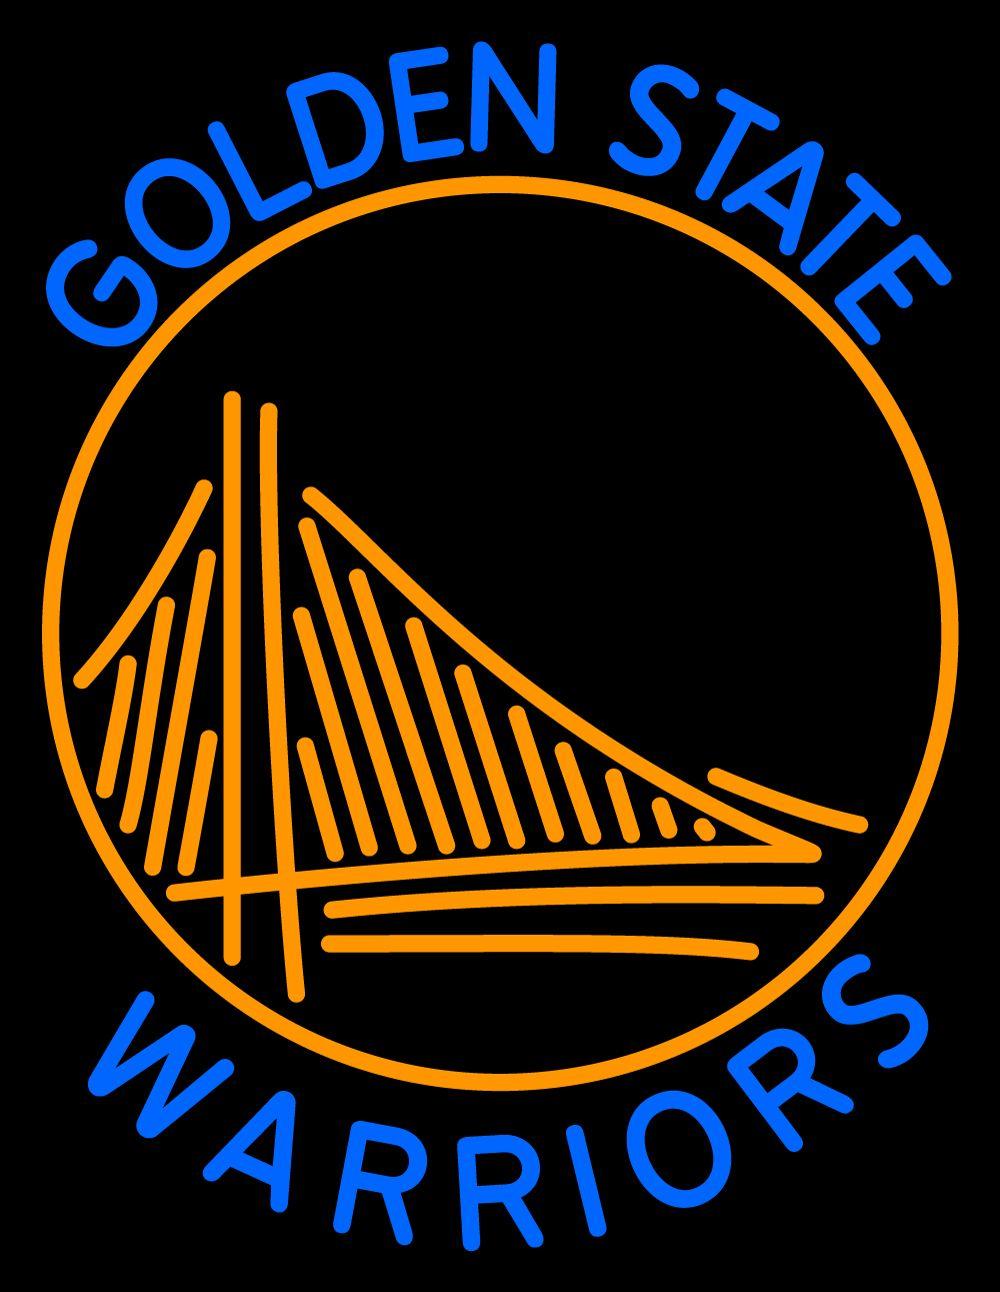 Golden State Warriors Wallpapers HD  PixelsTalkNet